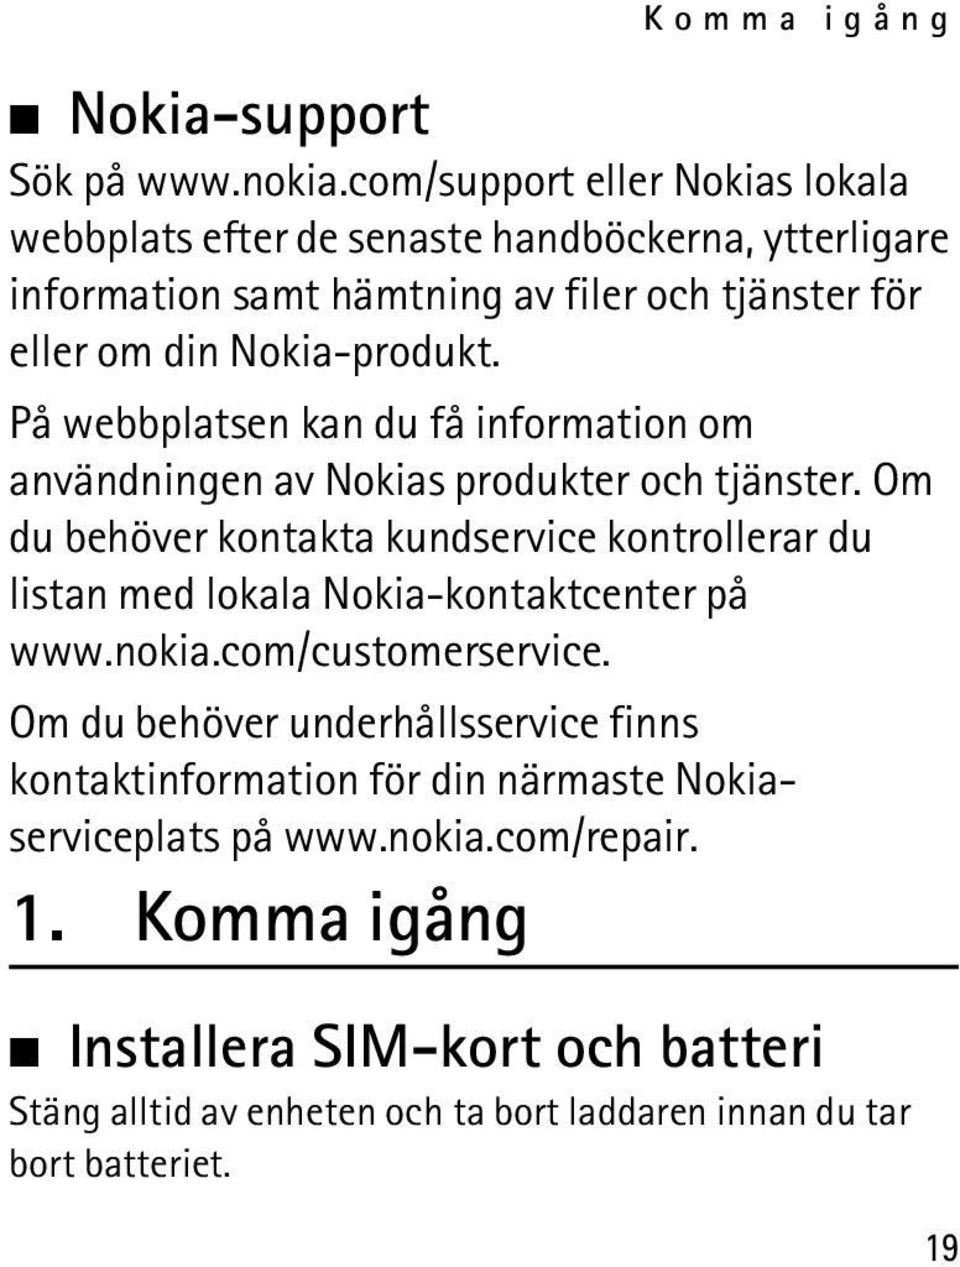 På webbplatsen kan du få information om användningen av Nokias produkter och tjänster.